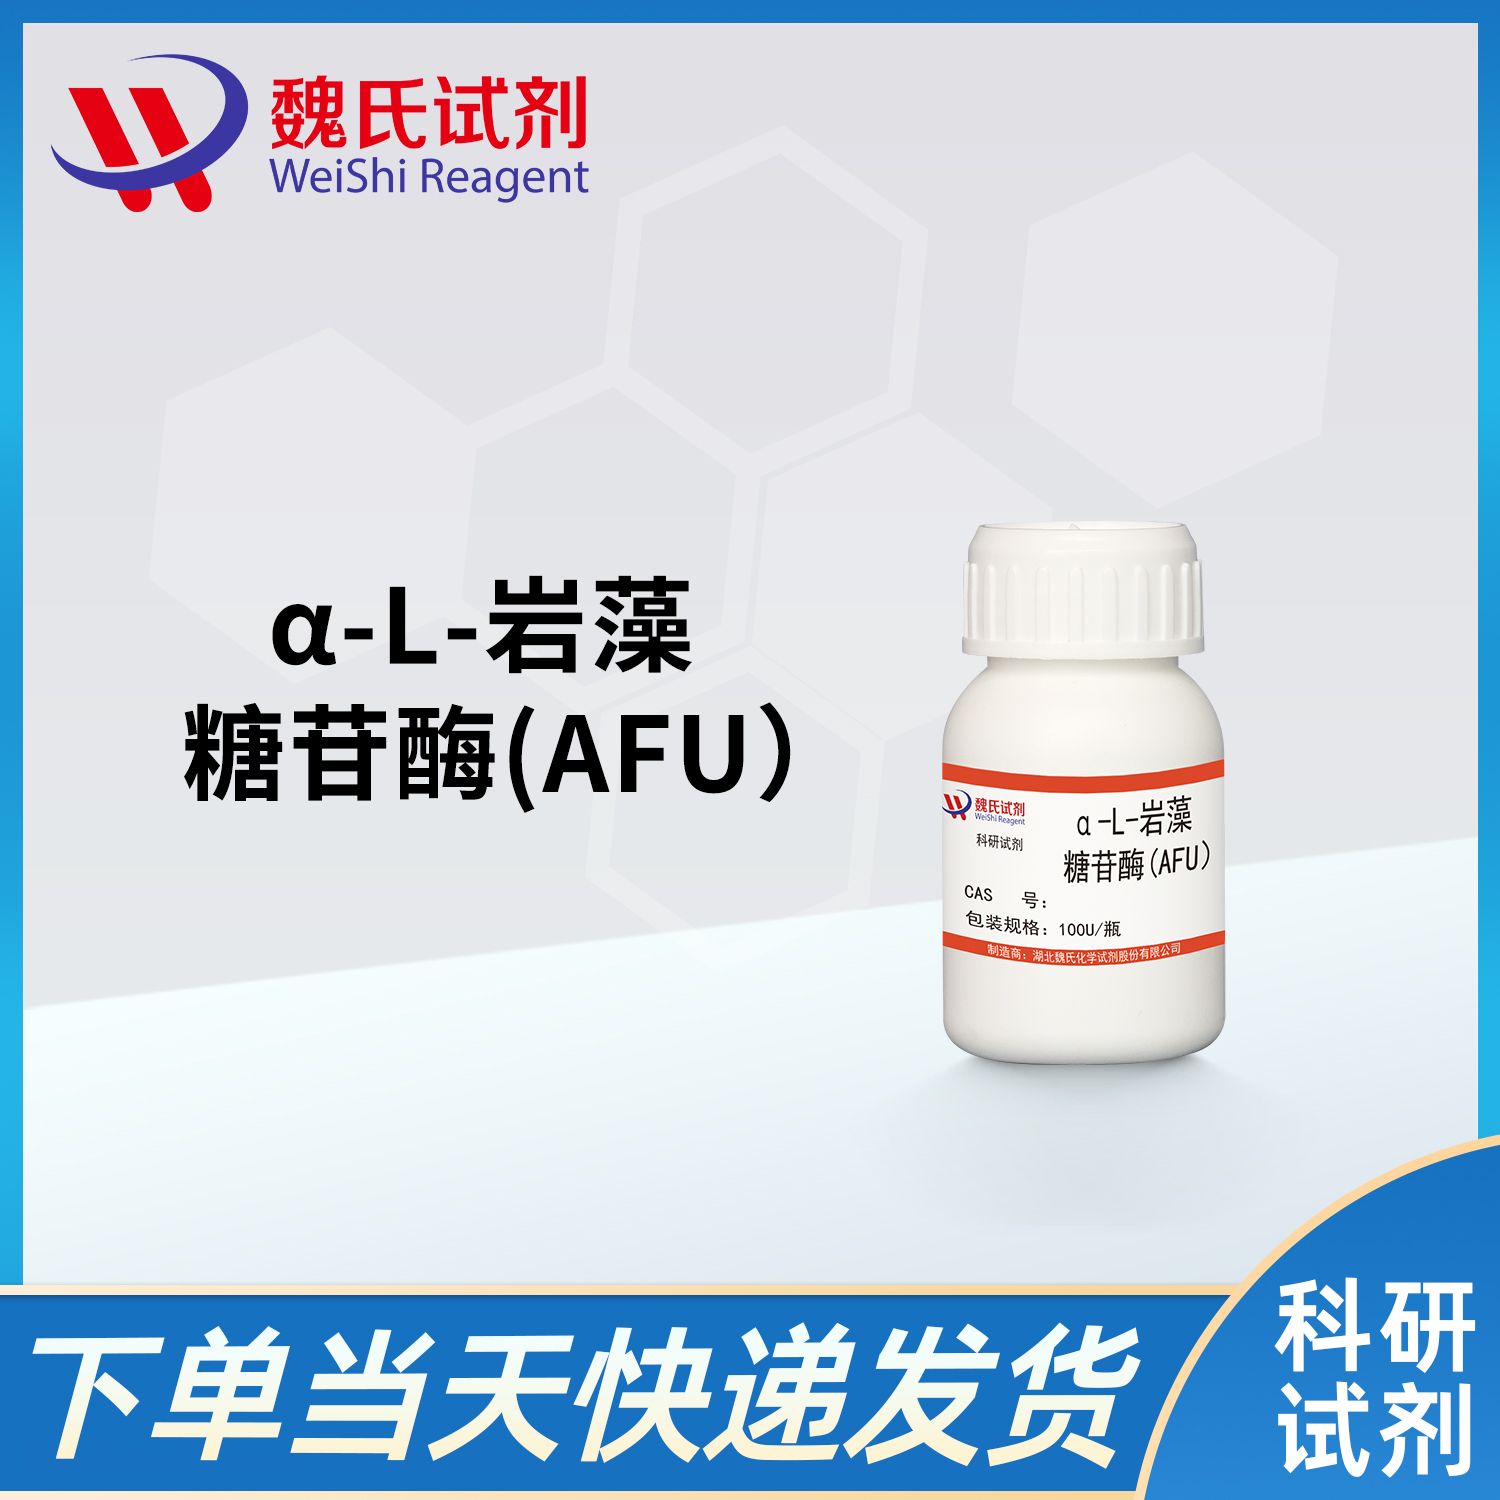 α-L-岩藻糖苷酶(AFU）/α-L-fucosidase（AFU)